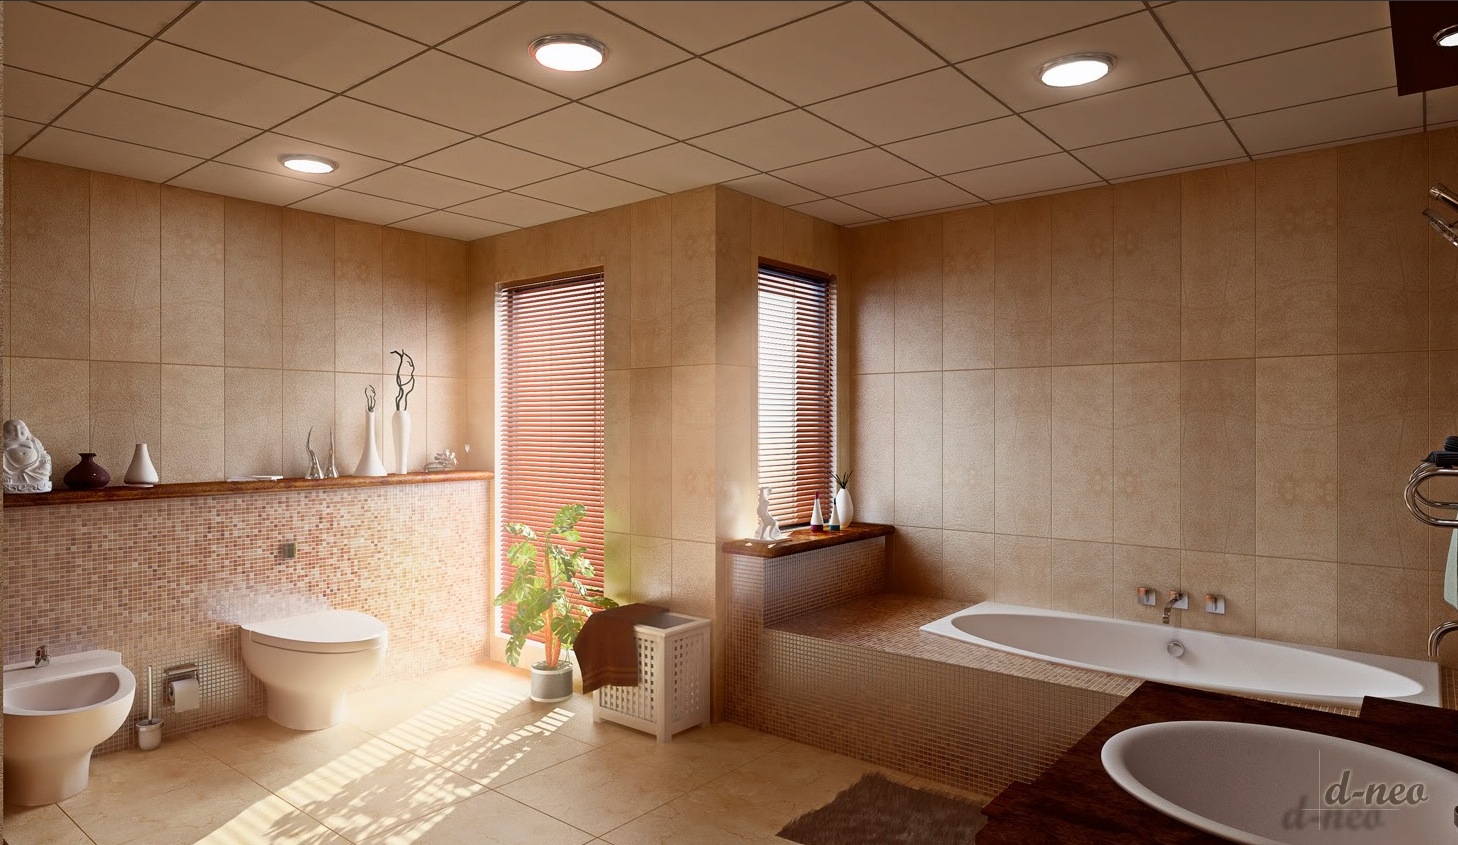 Ceiling Tile Ideas For Bathroom